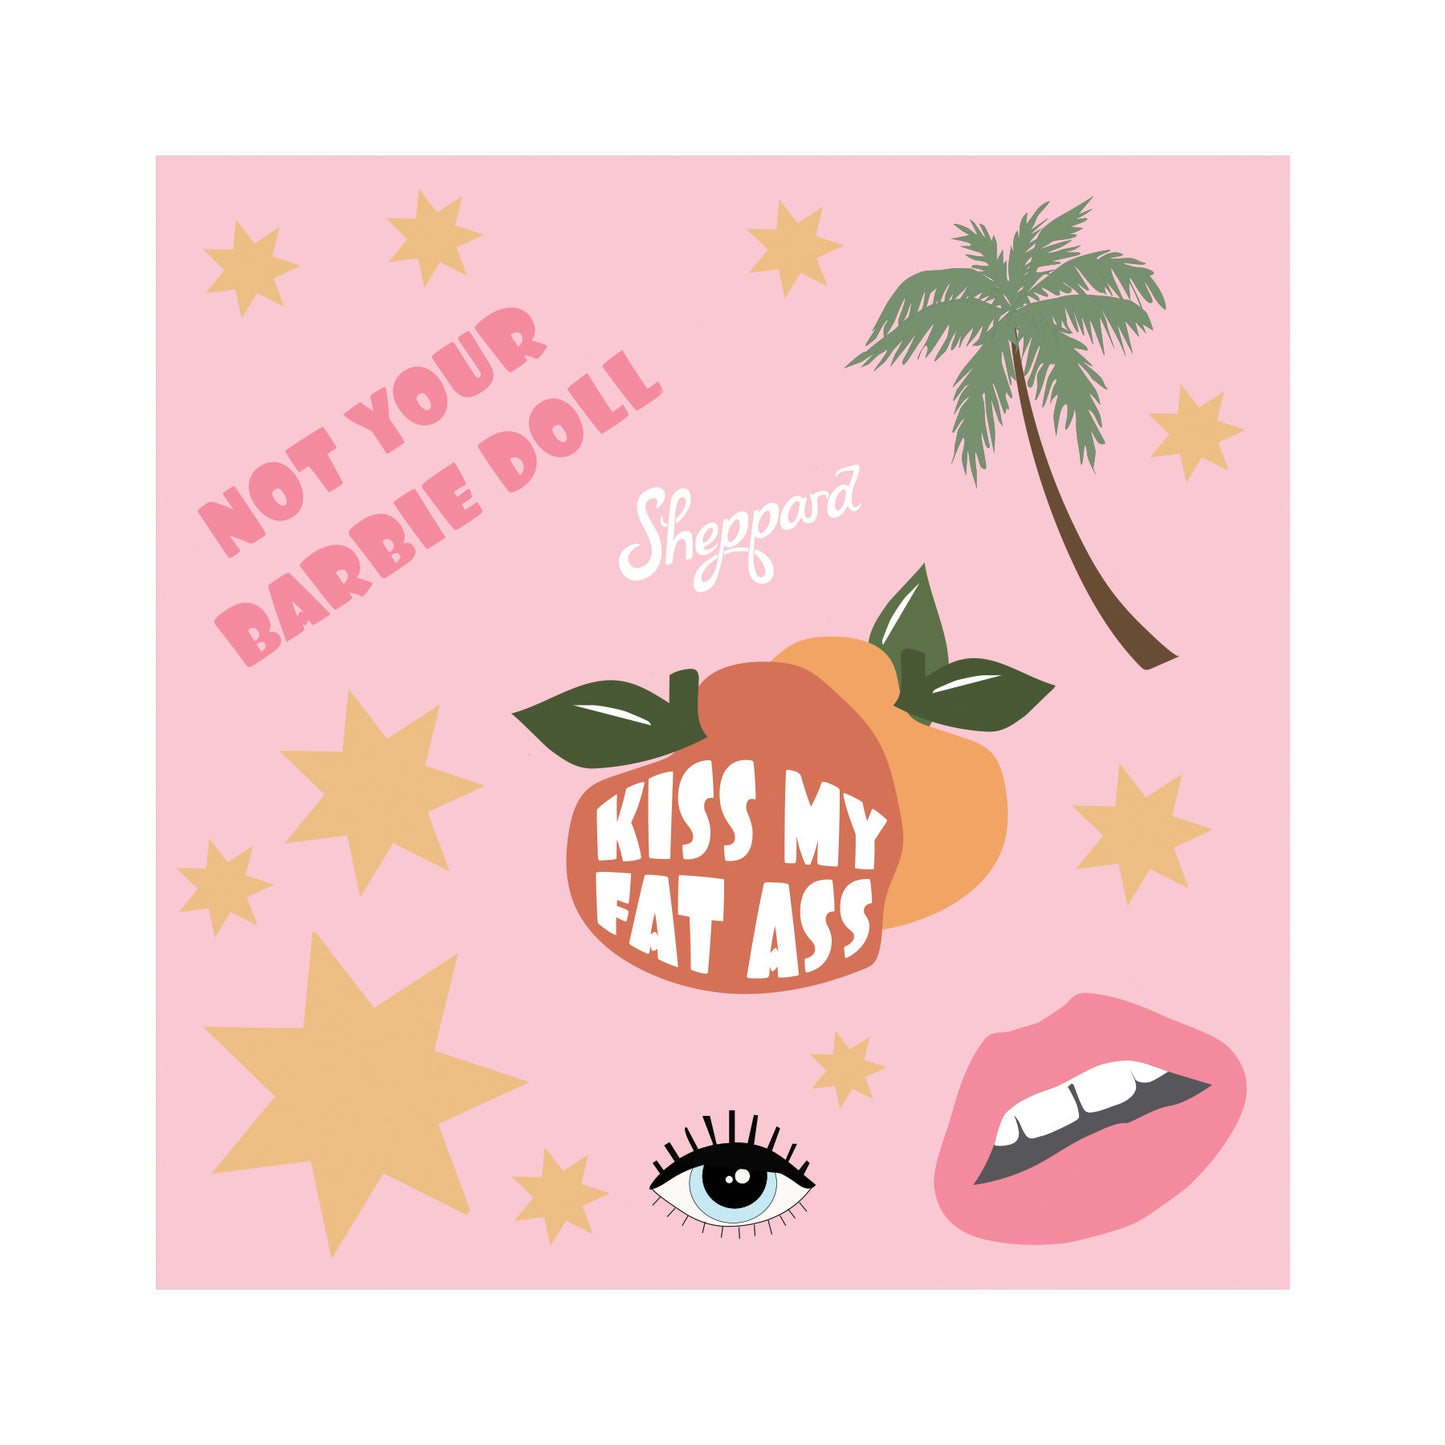 Kiss My Fat Ass - Sticker Sheet